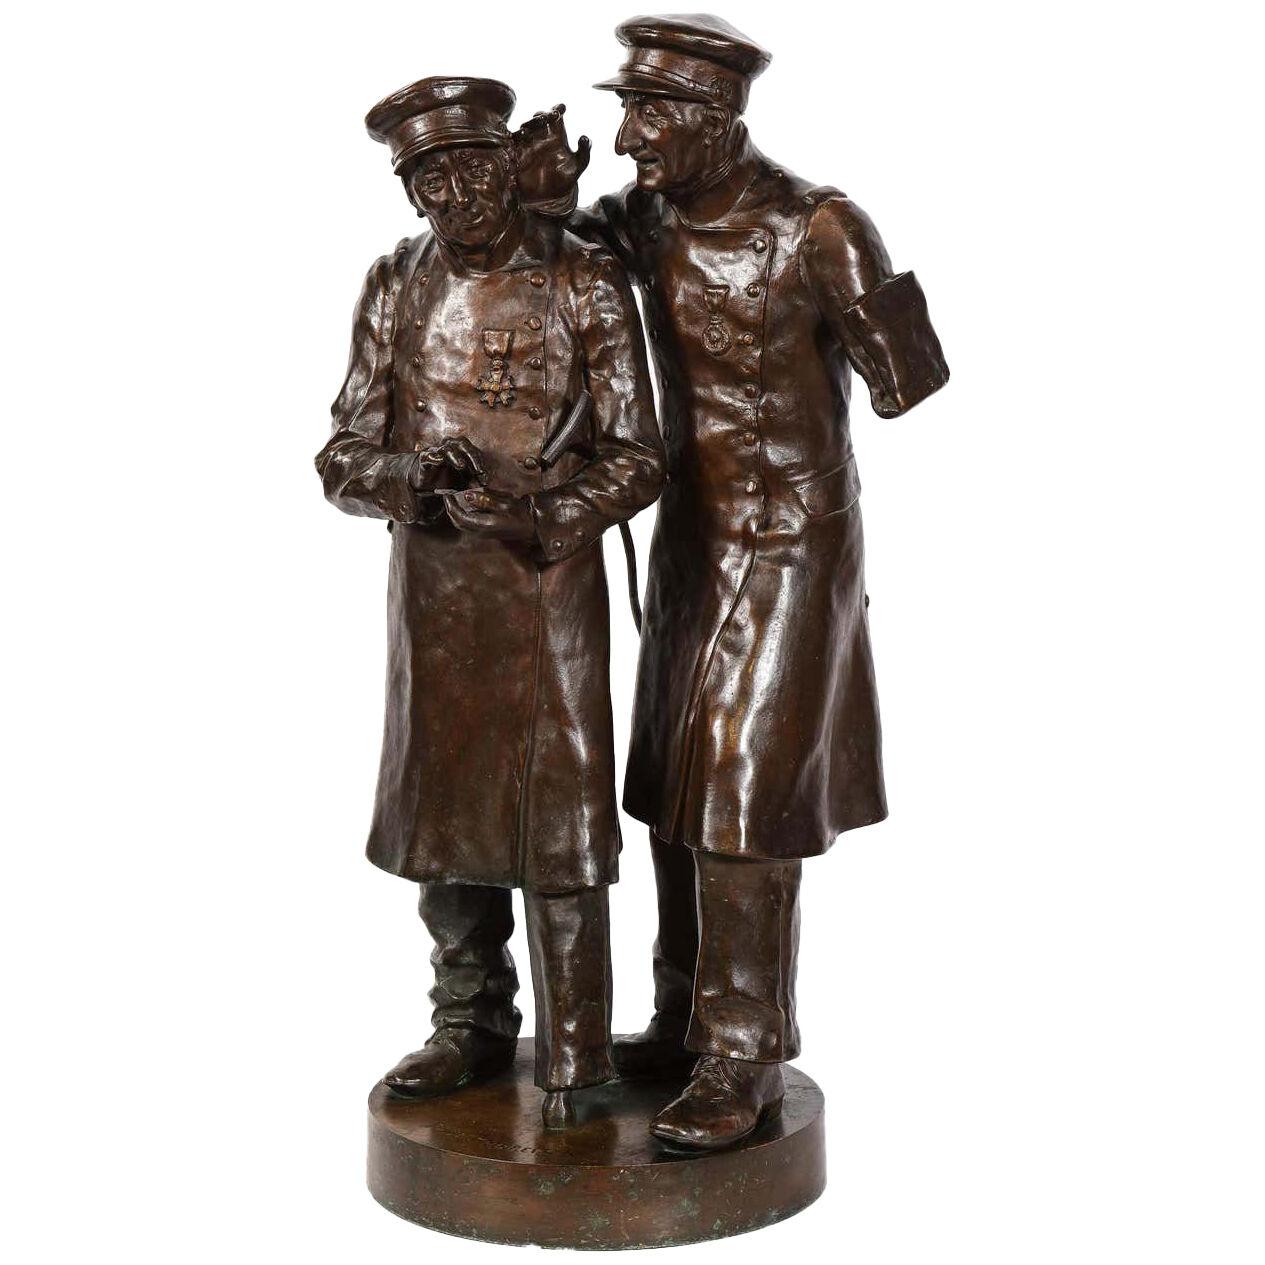 Paul Thubert (English, 19th Century) A Large Bronze Sculpture of War Veterans 